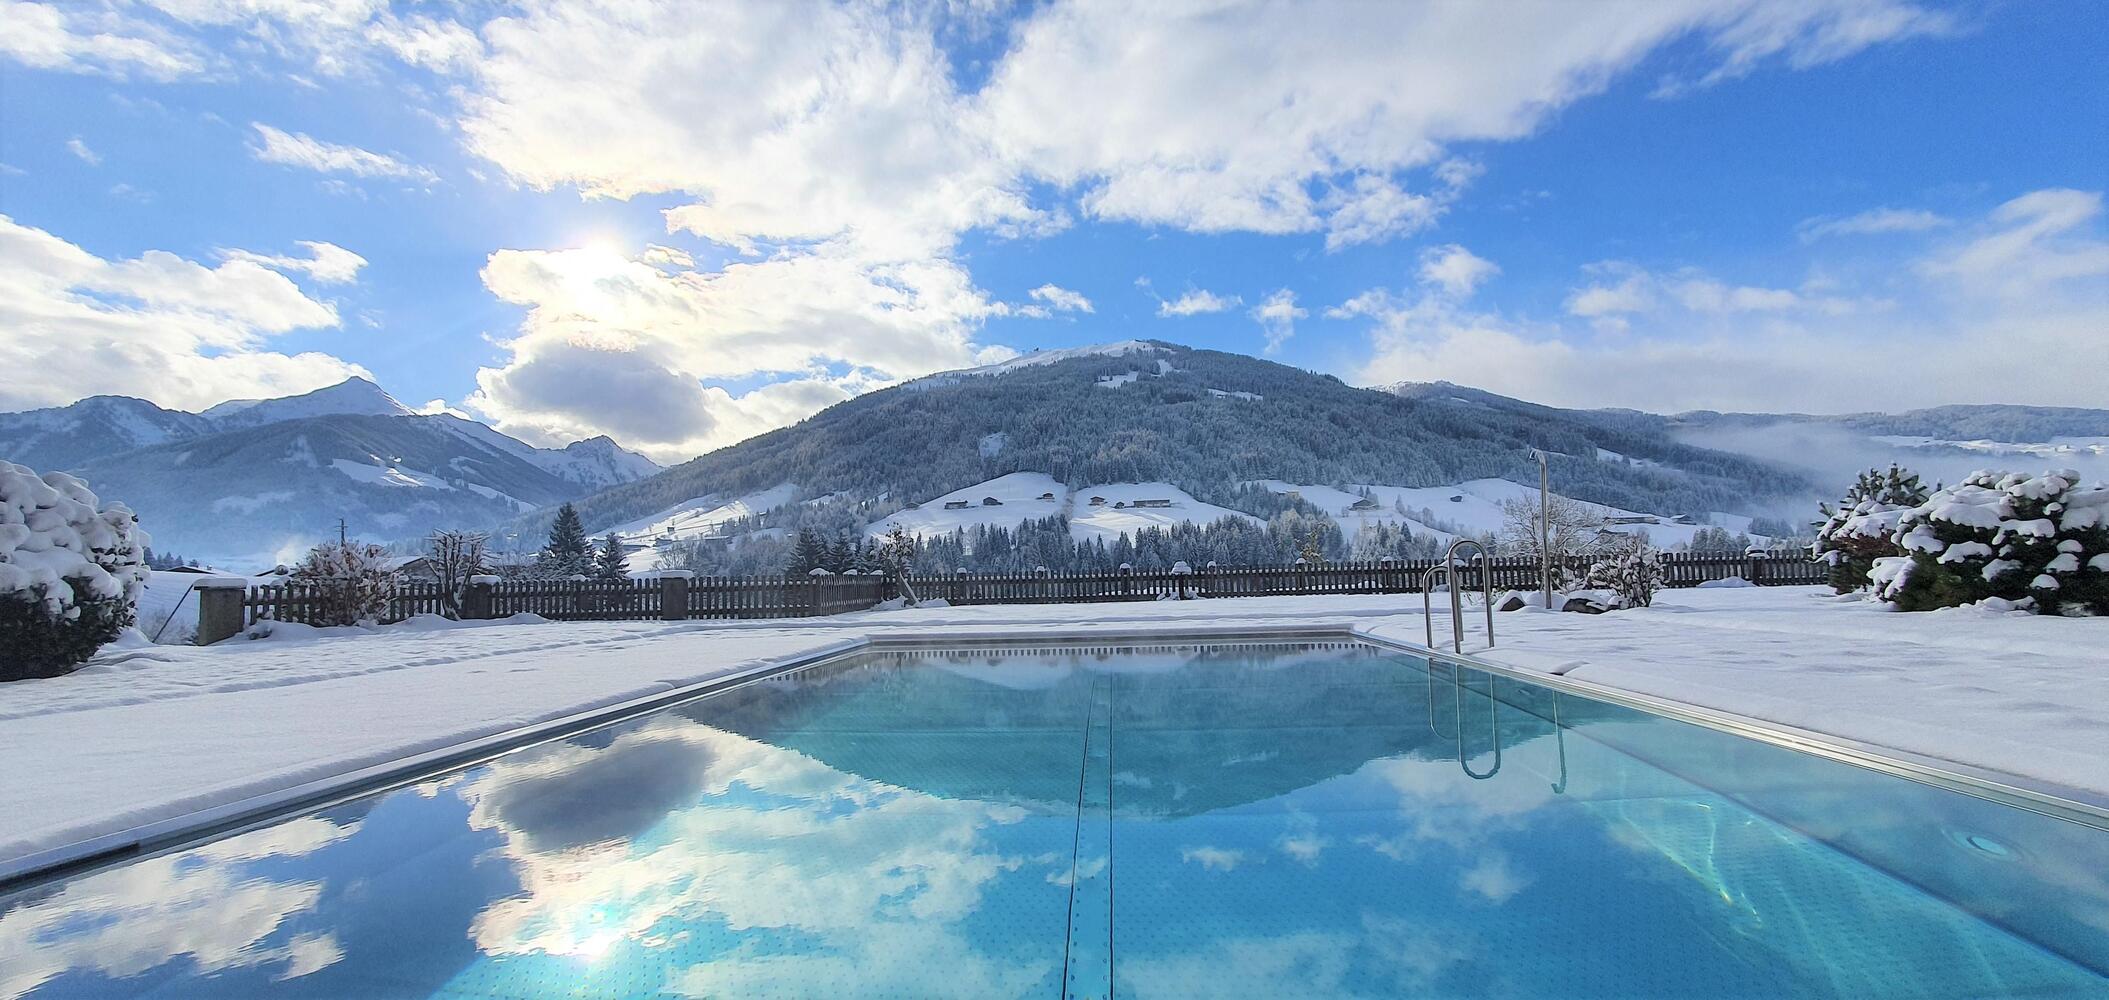 Natur Spa – a winter retreat